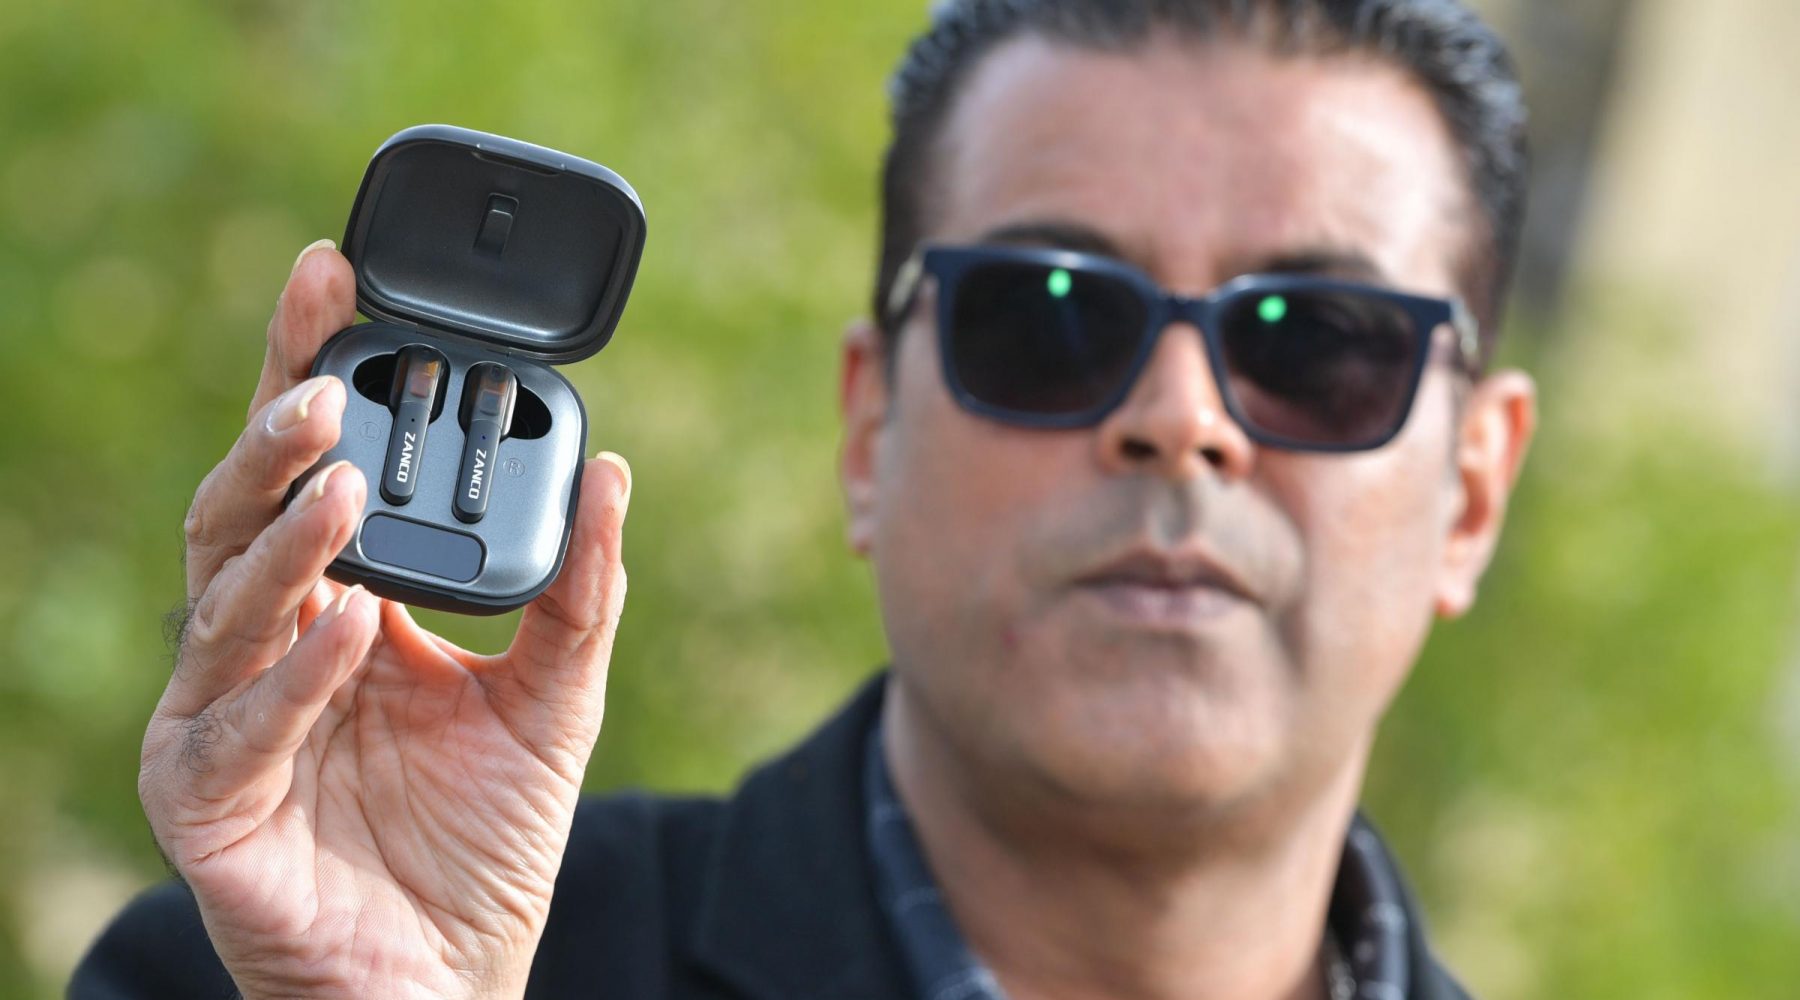 Bradford entrepreneur follows up world’s smallest mobile phone…